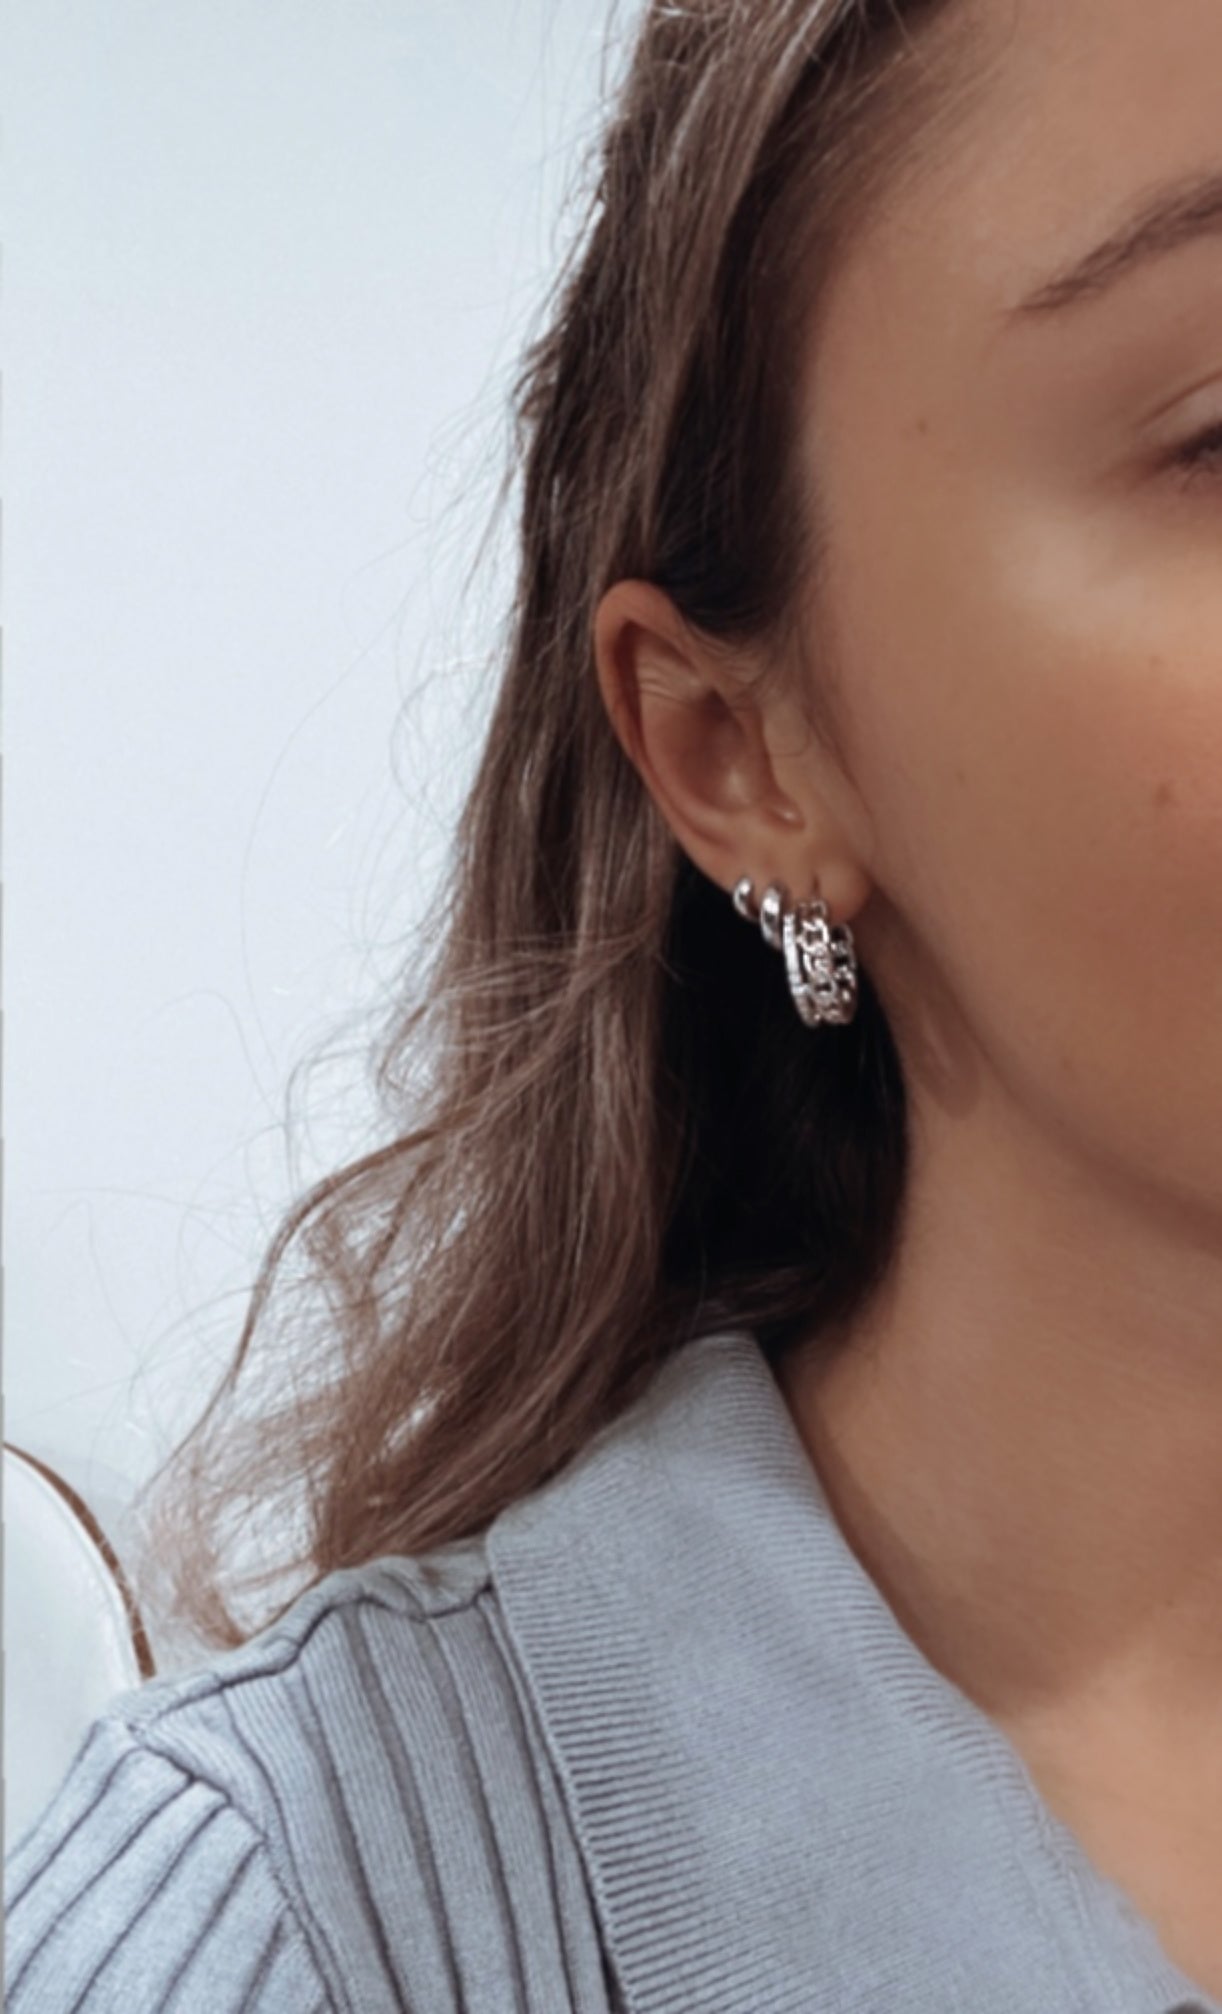 Boucles d'oreilles minimalistes en argent sterling 925 | Créoles Huggies Argent | 8,5 ou 12 mm | 1 paire